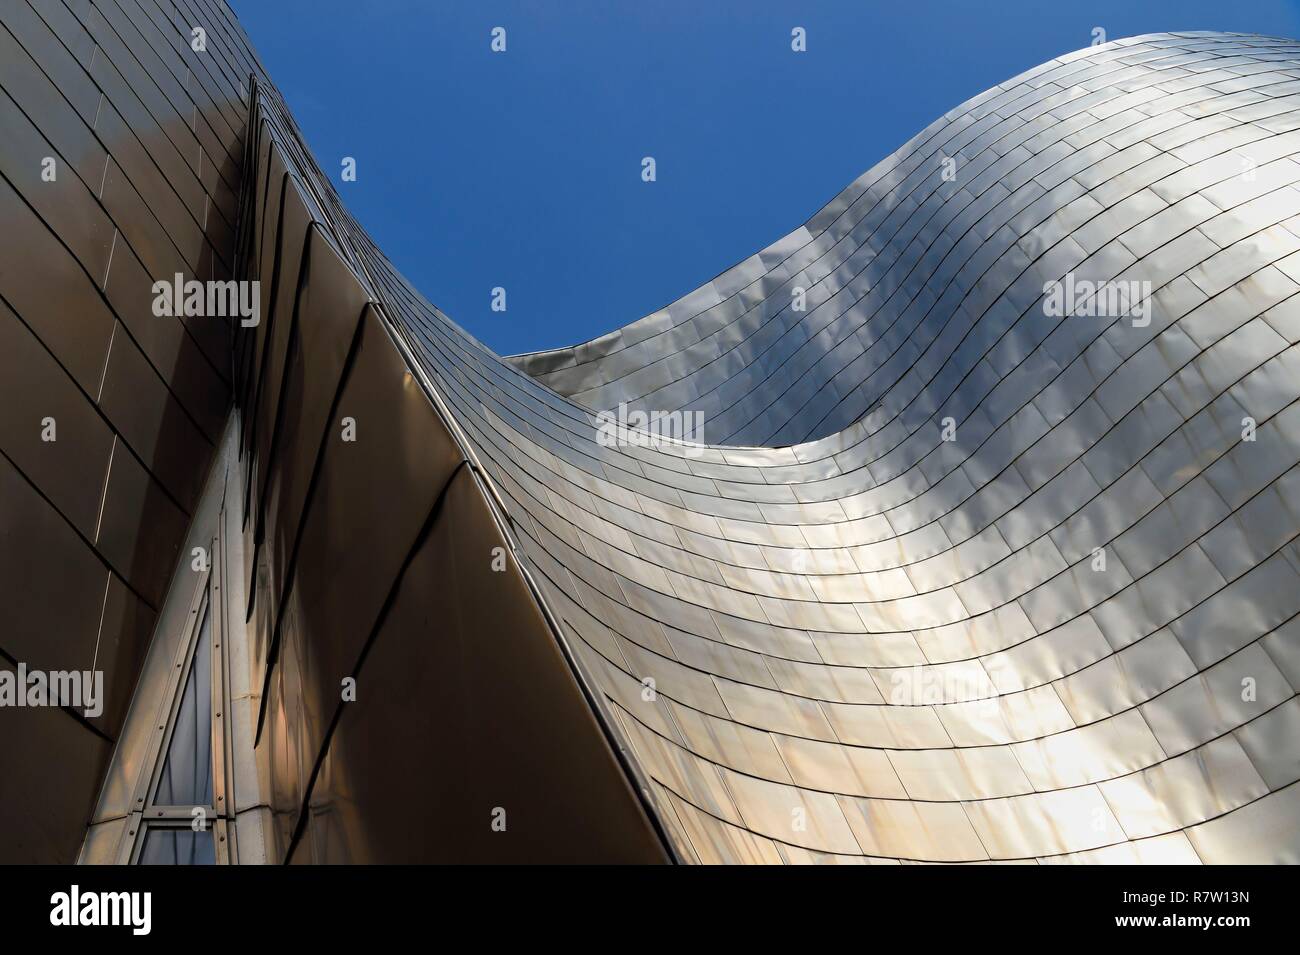 Espagne, Pays Basque, Province de Biscaye, Bilbao, le musée Guggenheim conçu par Frank Gehry, détail d'une façade en titane Banque D'Images